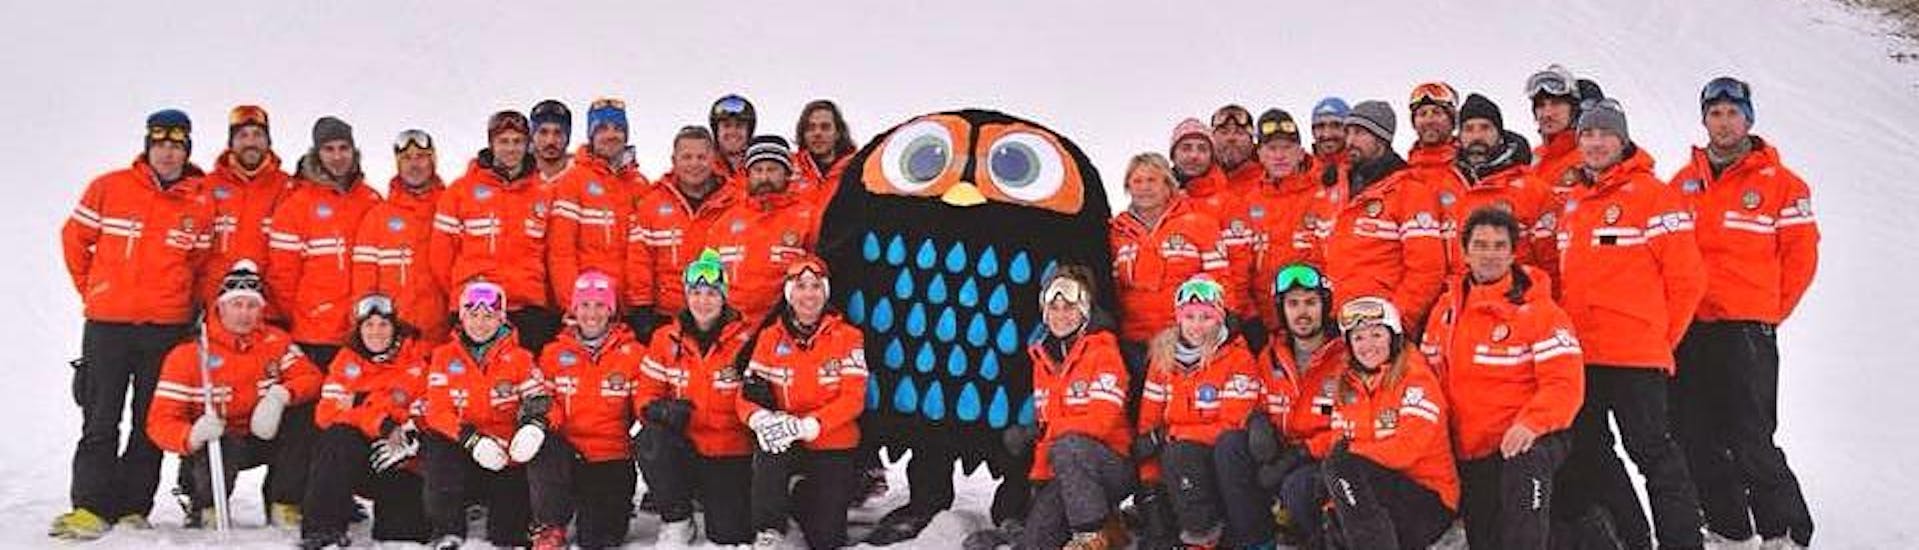 Il corso di sci per adulti - tutti i livellivene rallegrato da Tino il Civettino, la mascotte della Scuola Italiana di sci Civetta.